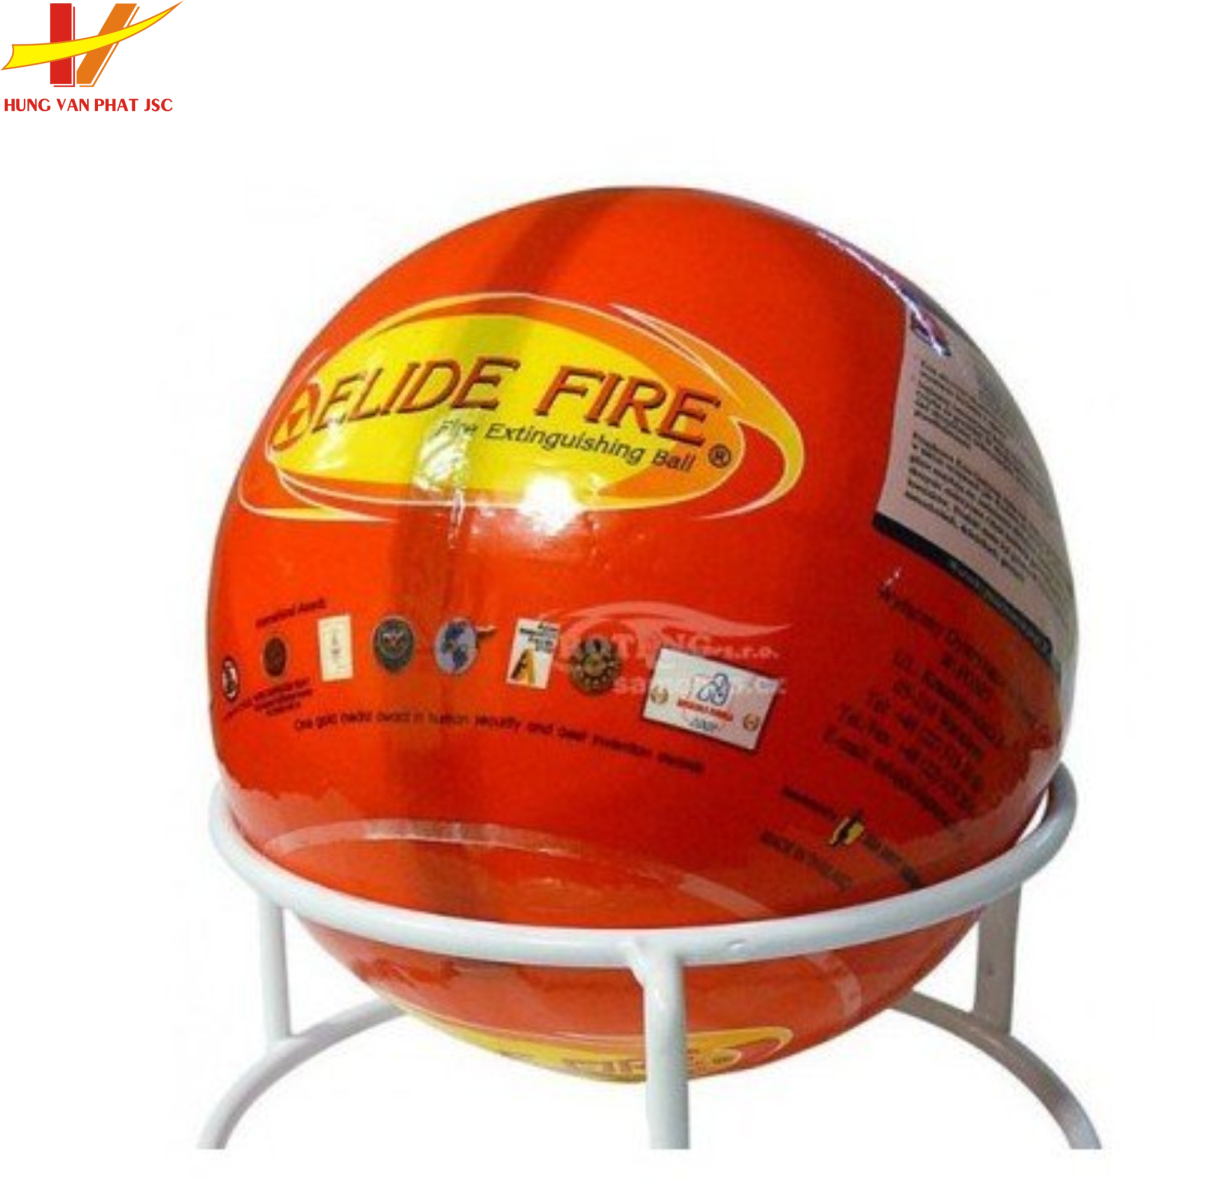 Quả cầu chữa cháy tự động Elide Fire